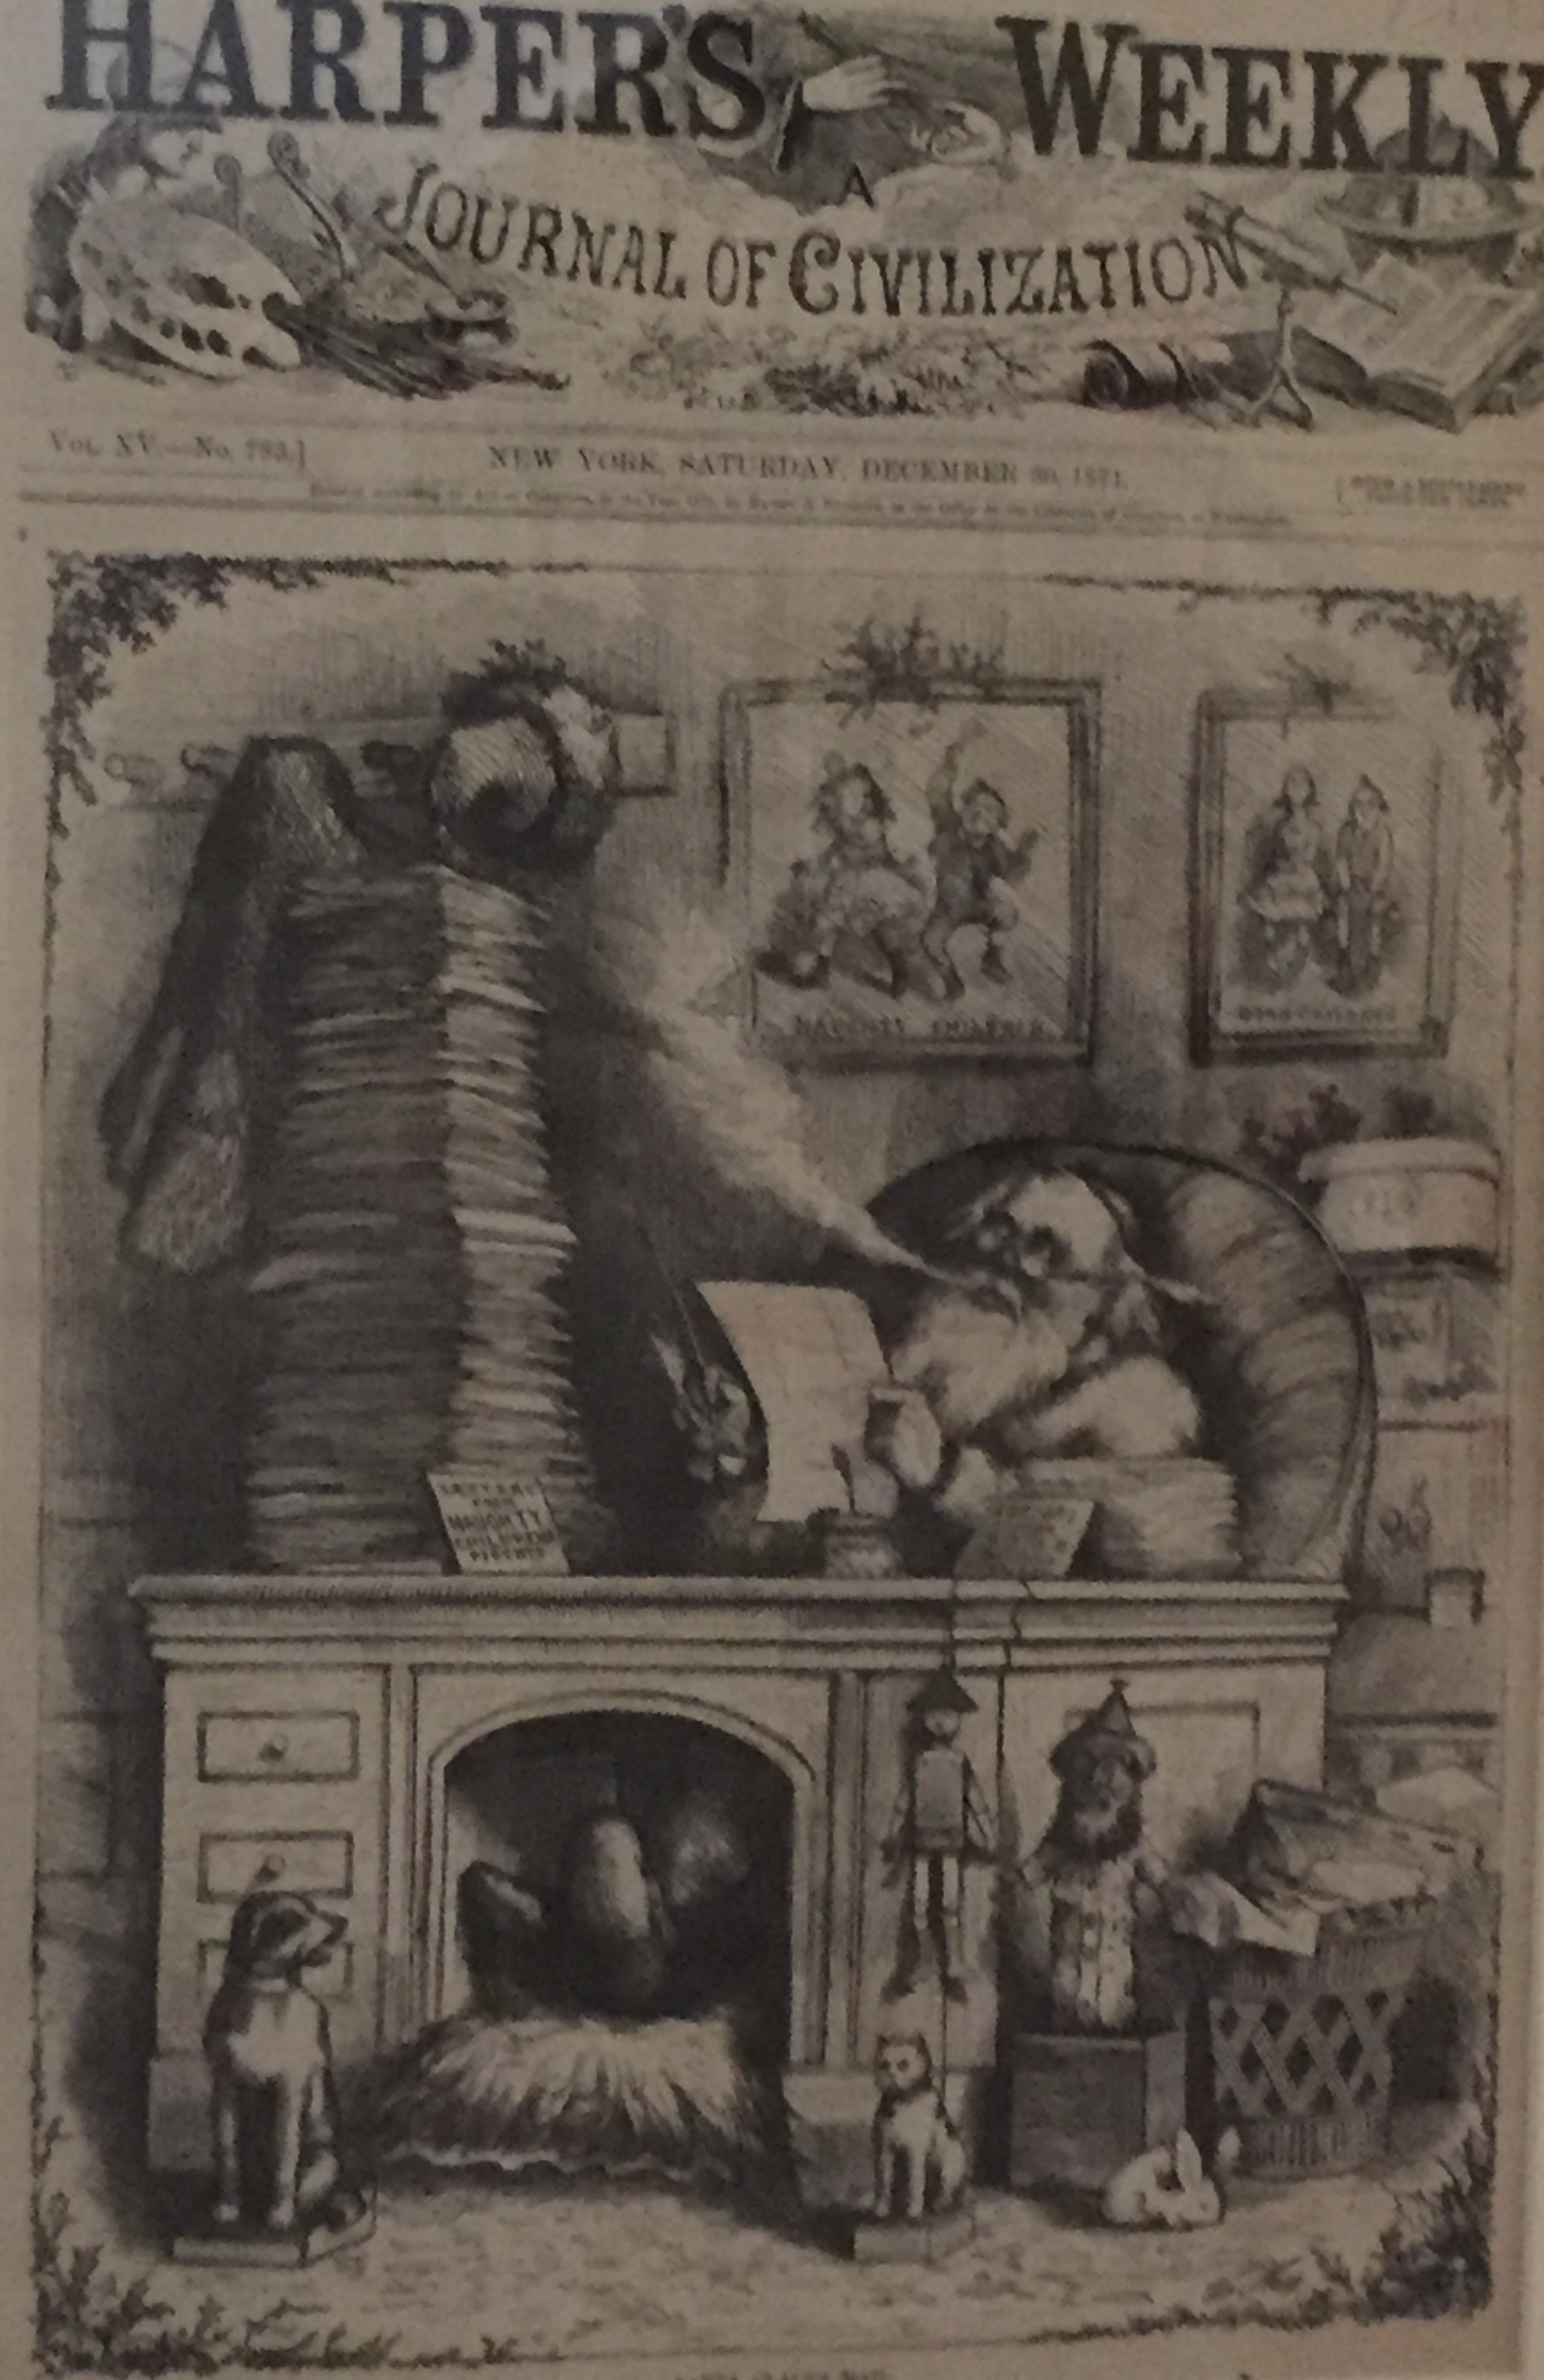 Una portada de Harper's Weekly con un dibujo de Papá Noel sentado en un escritorio fumando y leyendo en una gran pila de papeles.